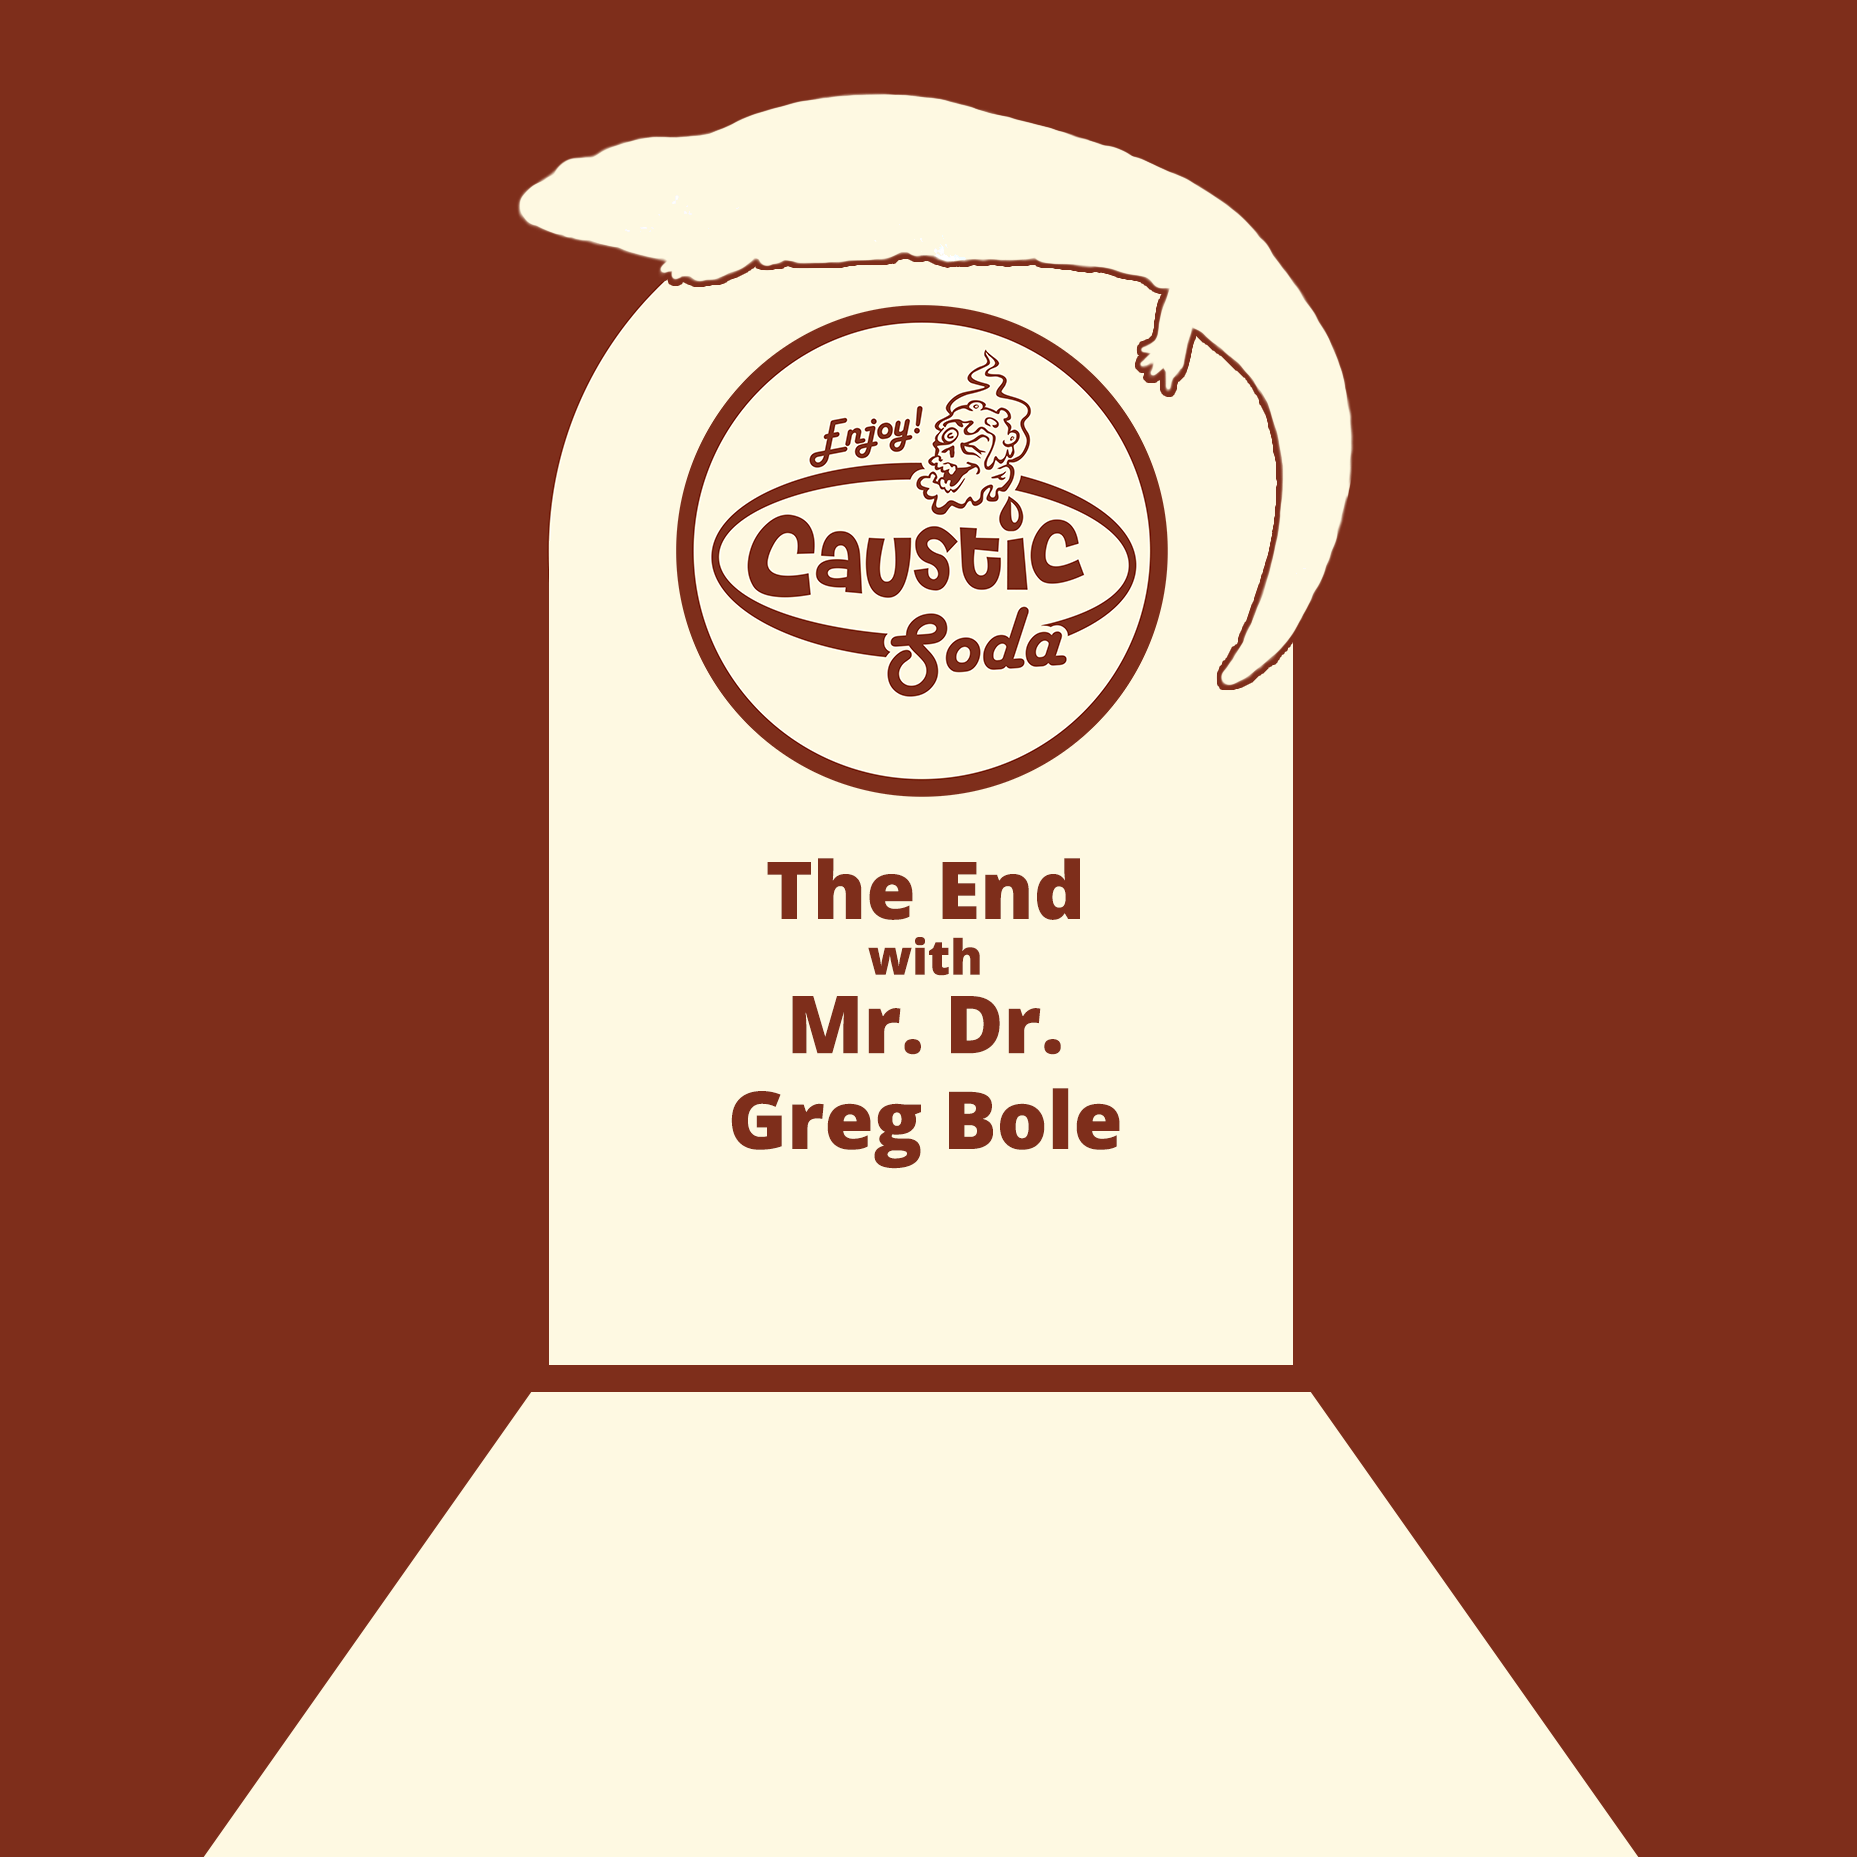 The End with Mr. Dr. Greg Bole